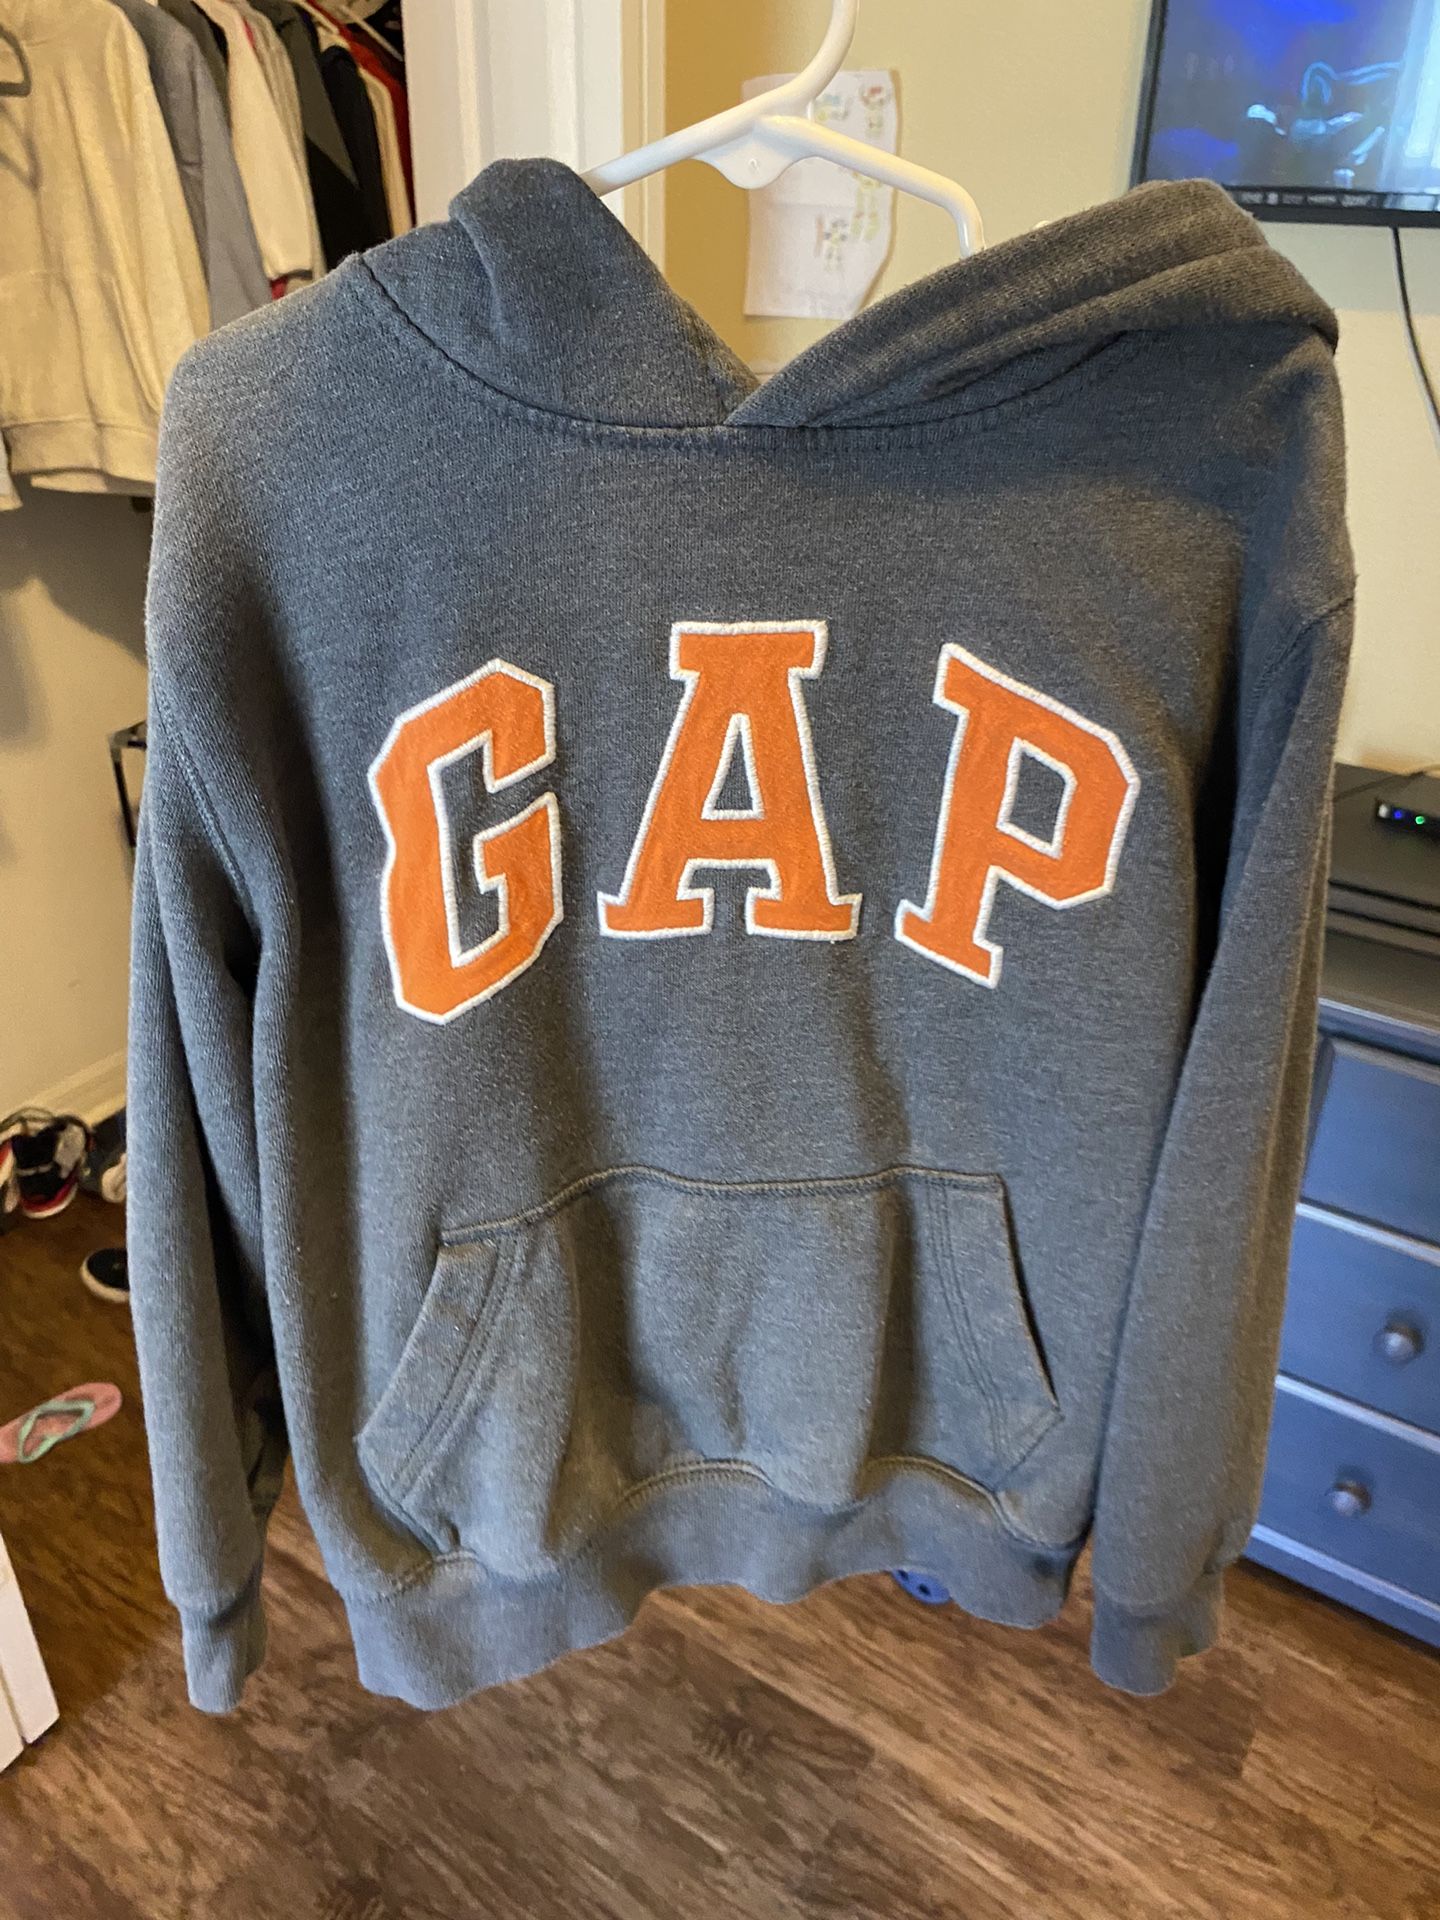 Gap kids size small sweaters 